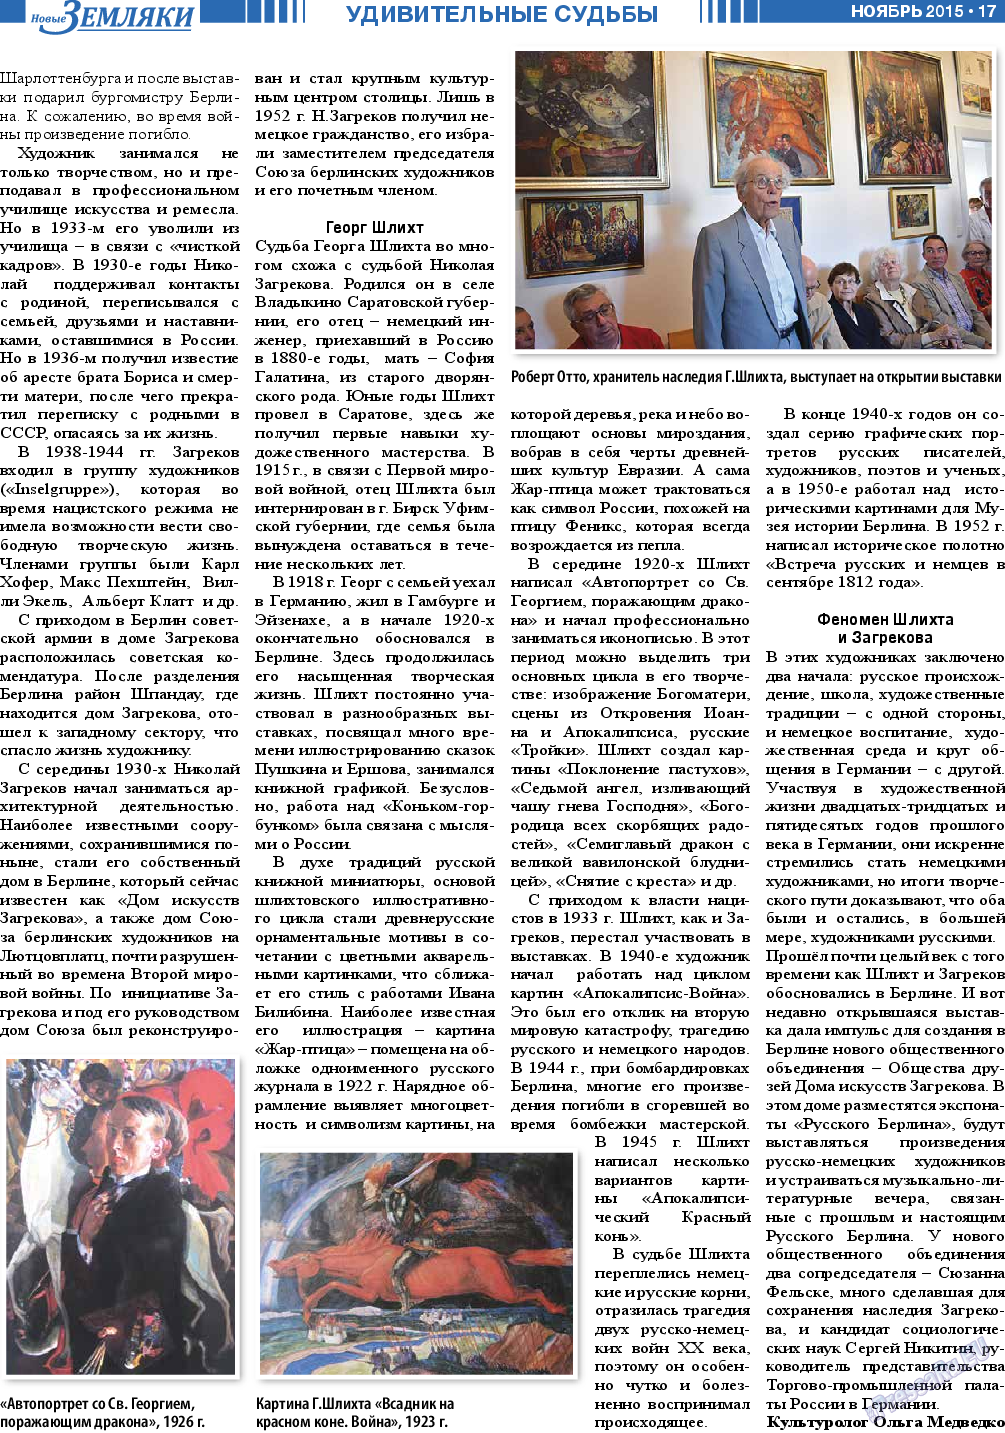 Новые Земляки, газета. 2015 №11 стр.17